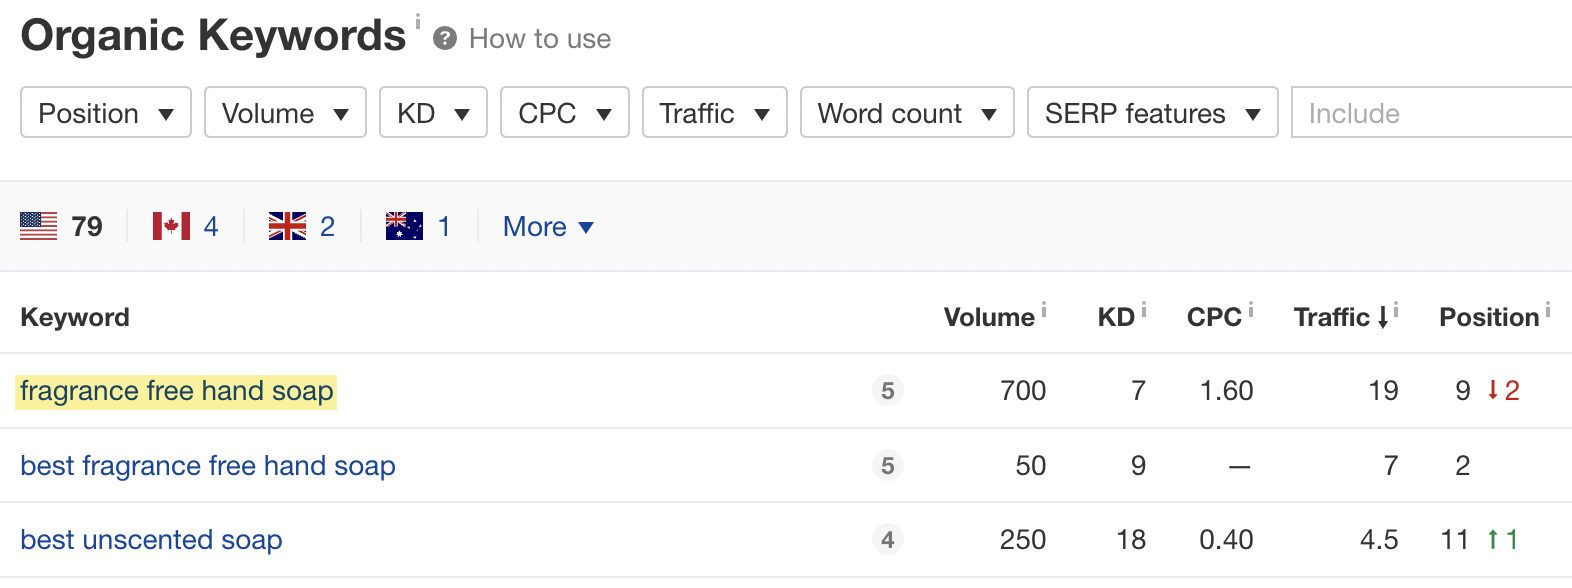 Lista de palavras-chave com dados correspondentes como Volume, KD, etc.